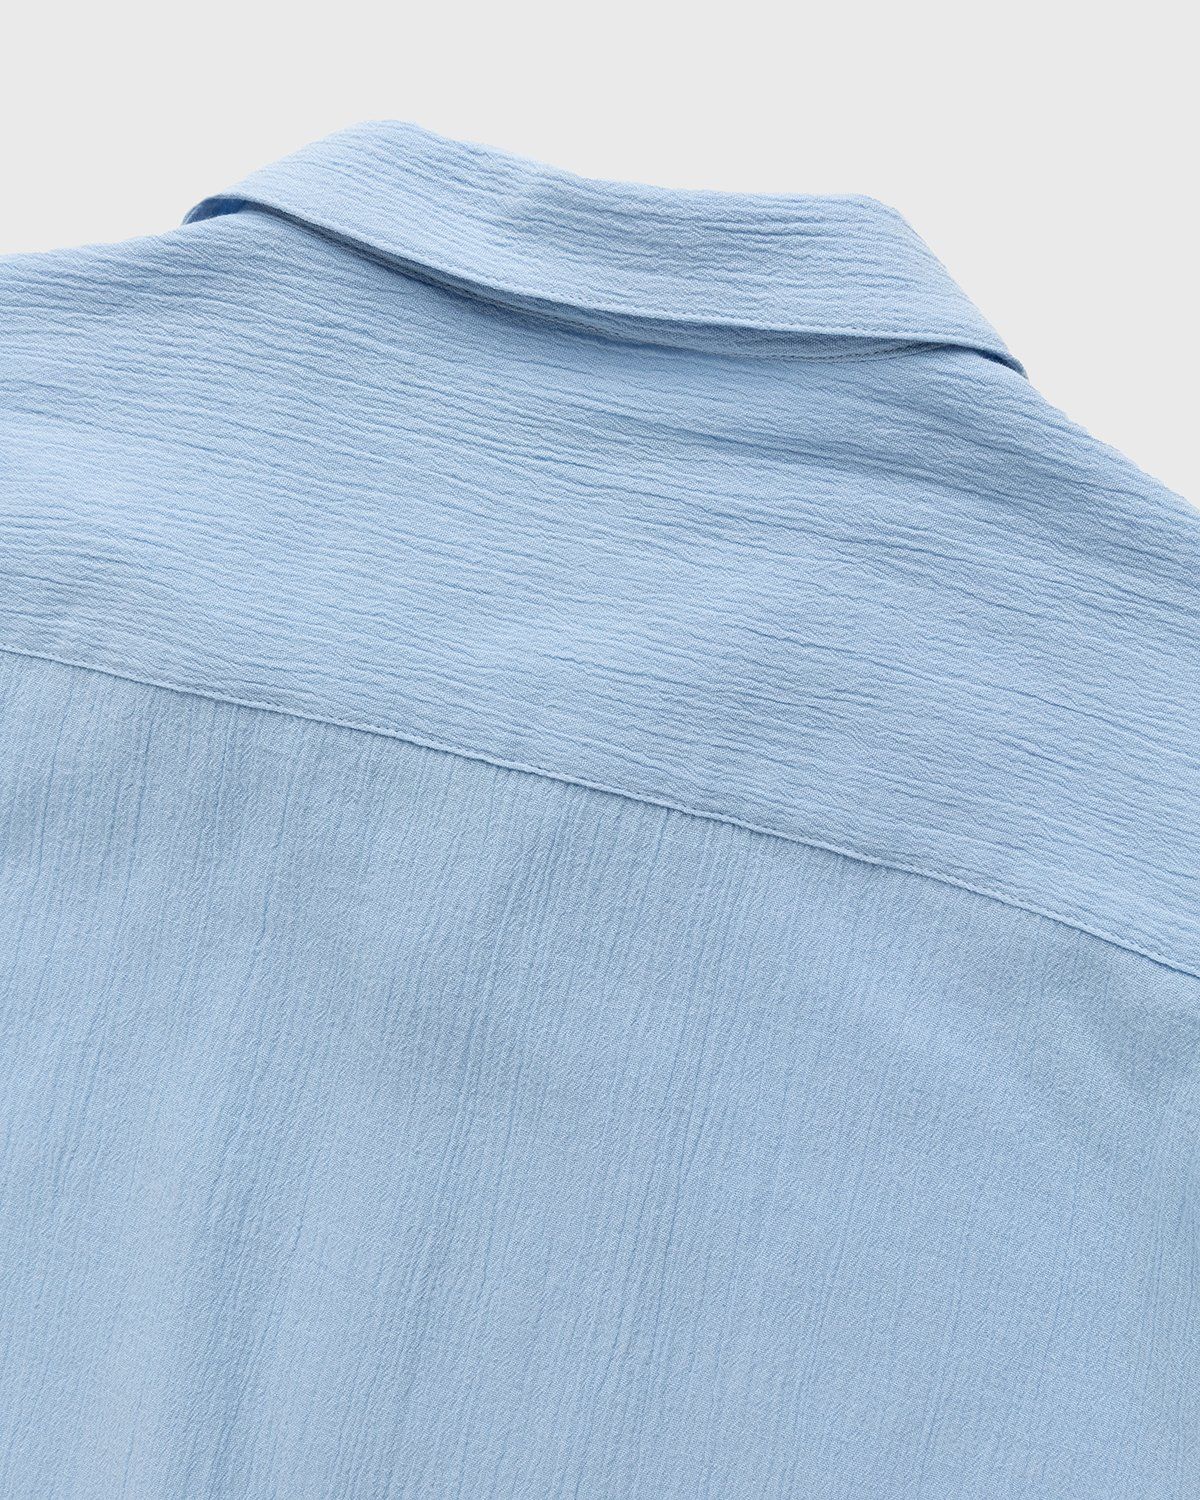 Highsnobiety – Crepe Short Sleeve Shirt Sky Blue - Shirts - Blue - Image 4